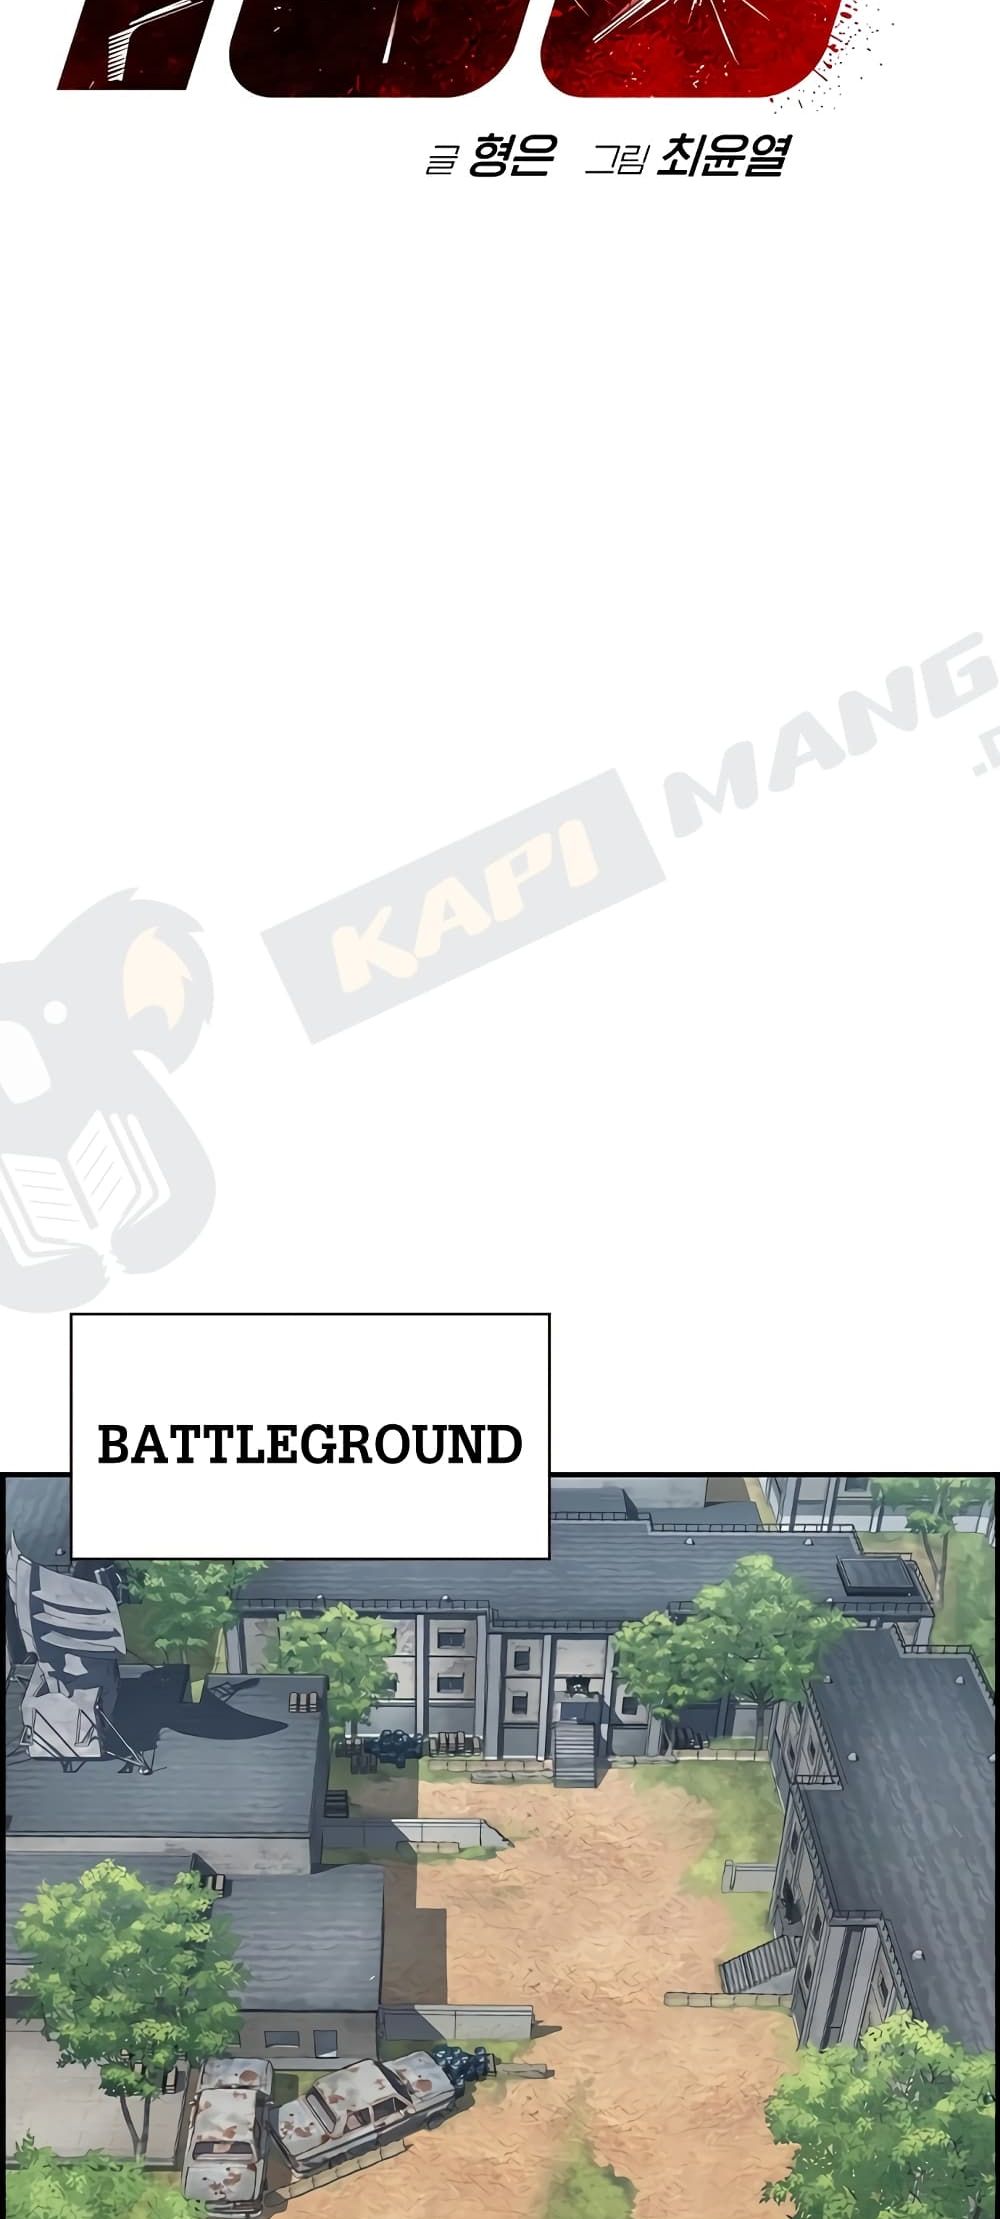 Battleground 2-2